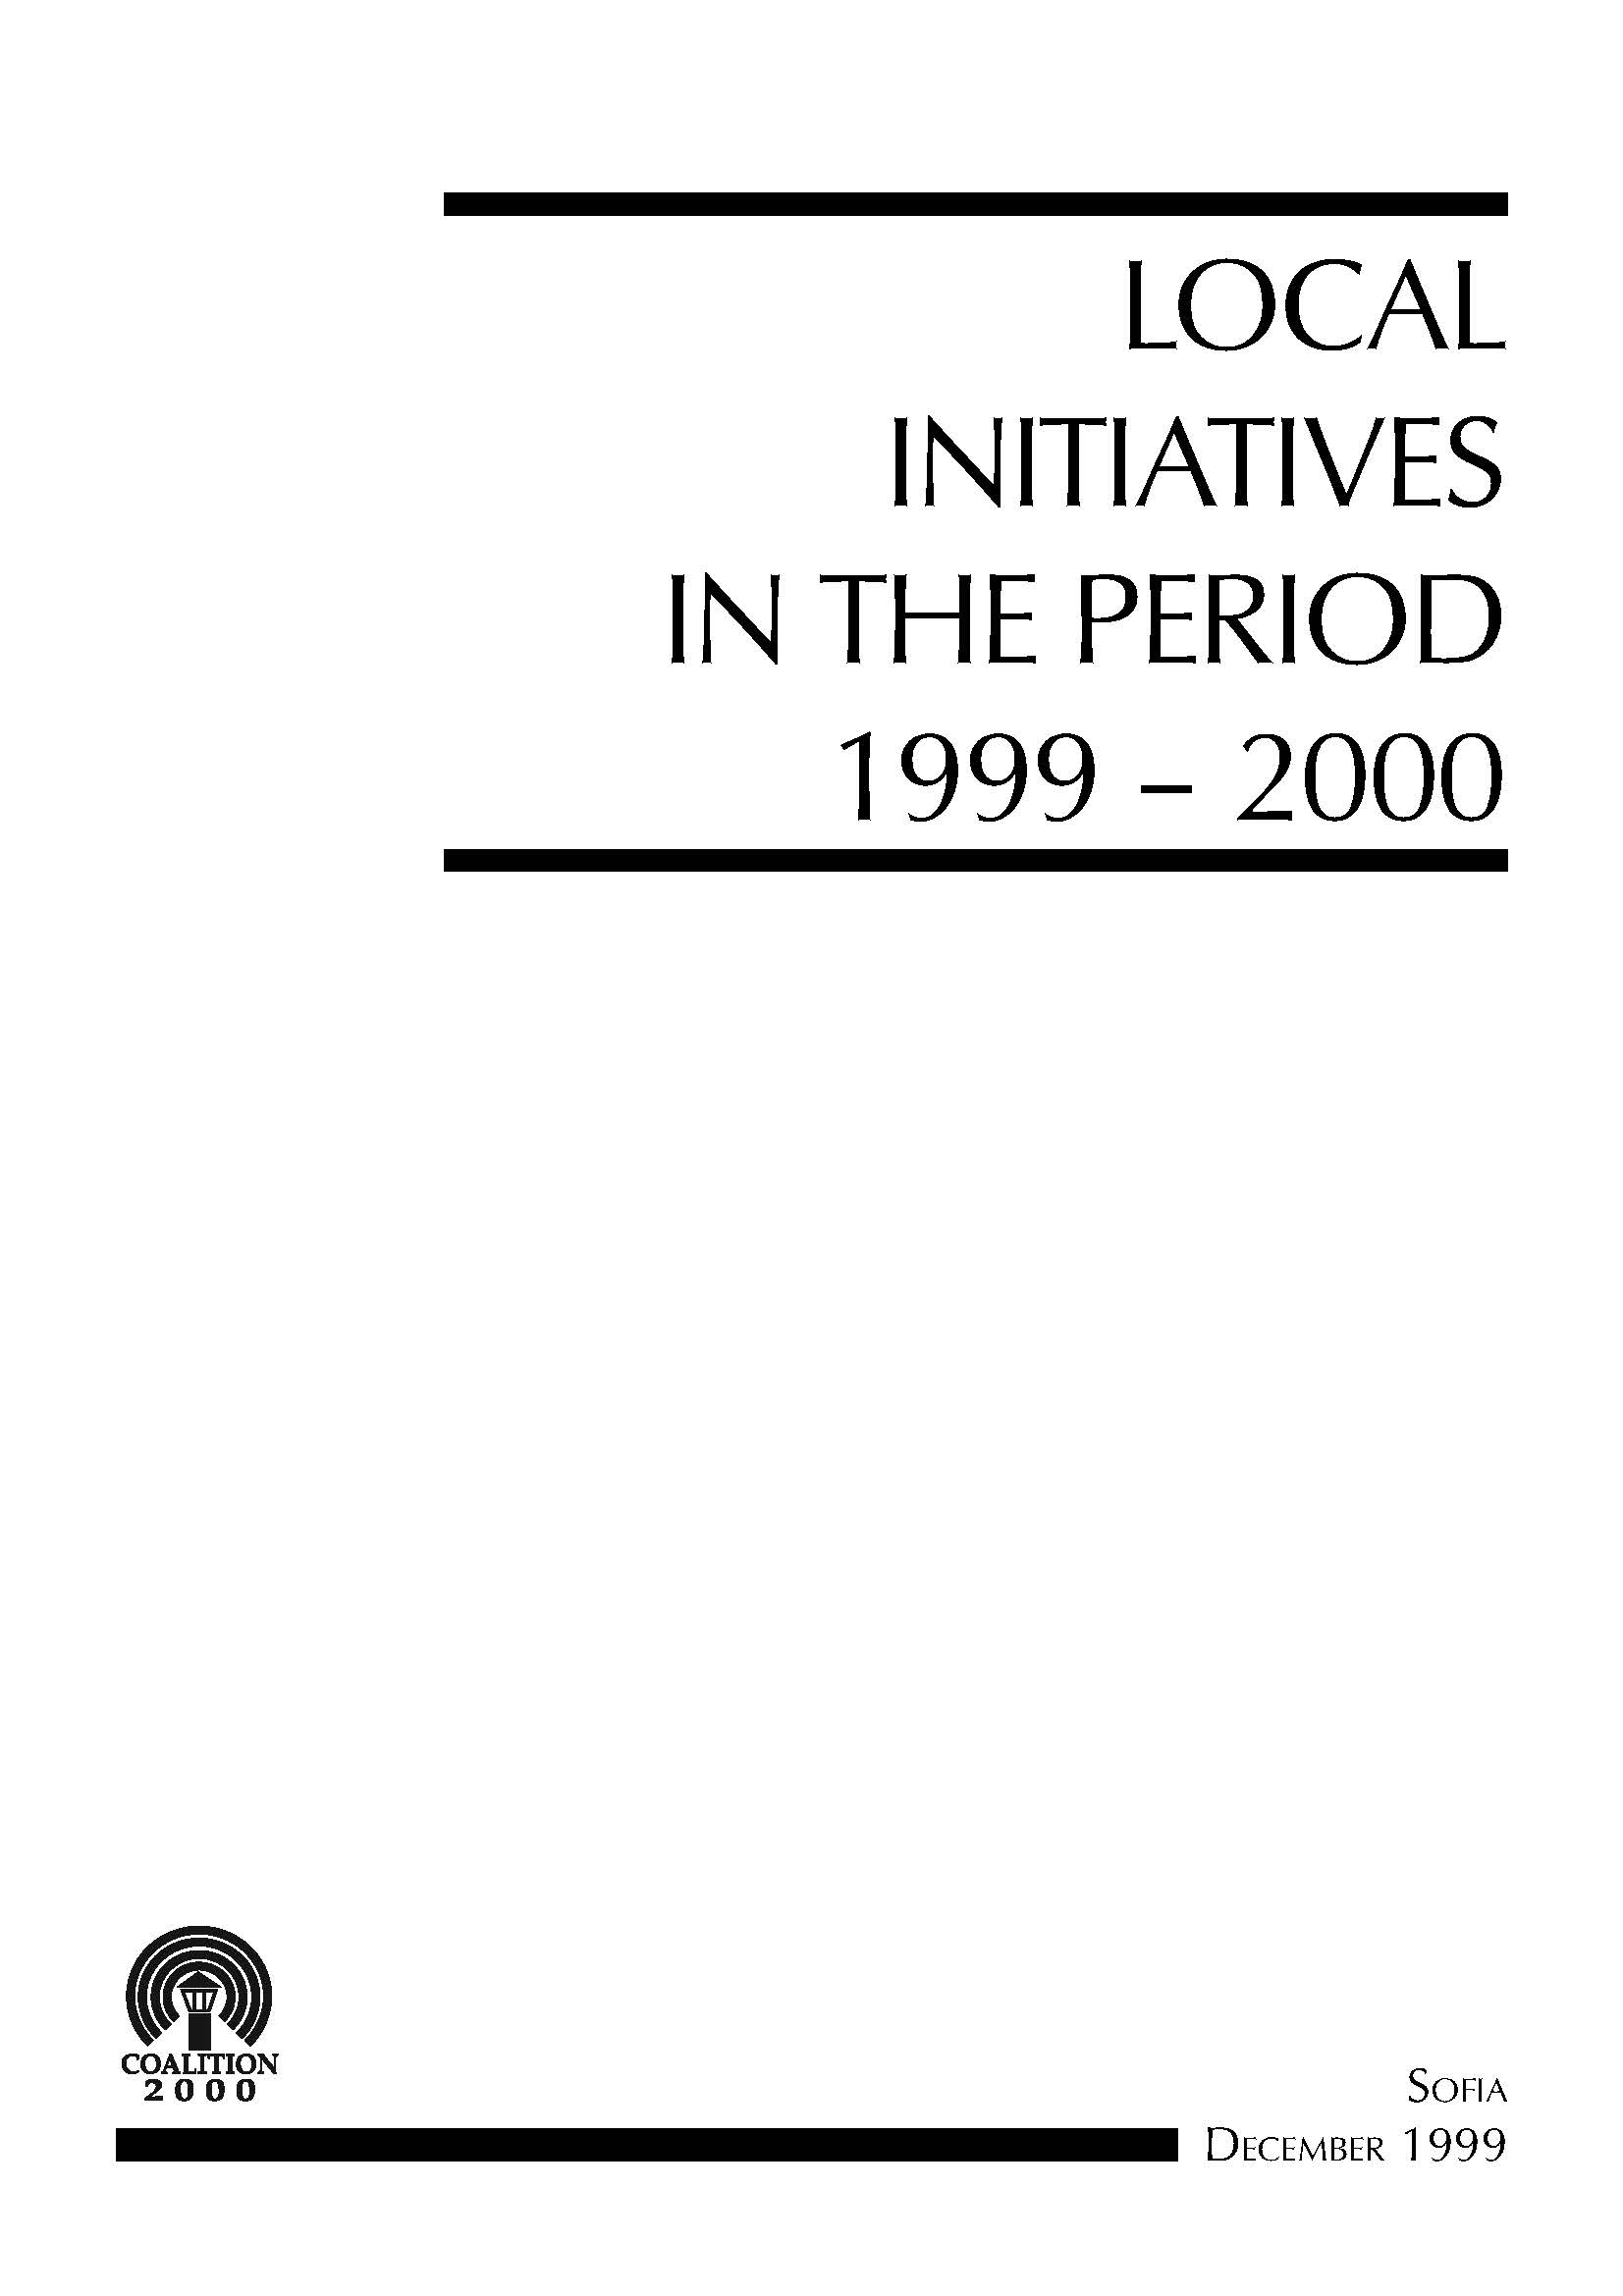 Local Initiatives in the Period 1999 - 2000